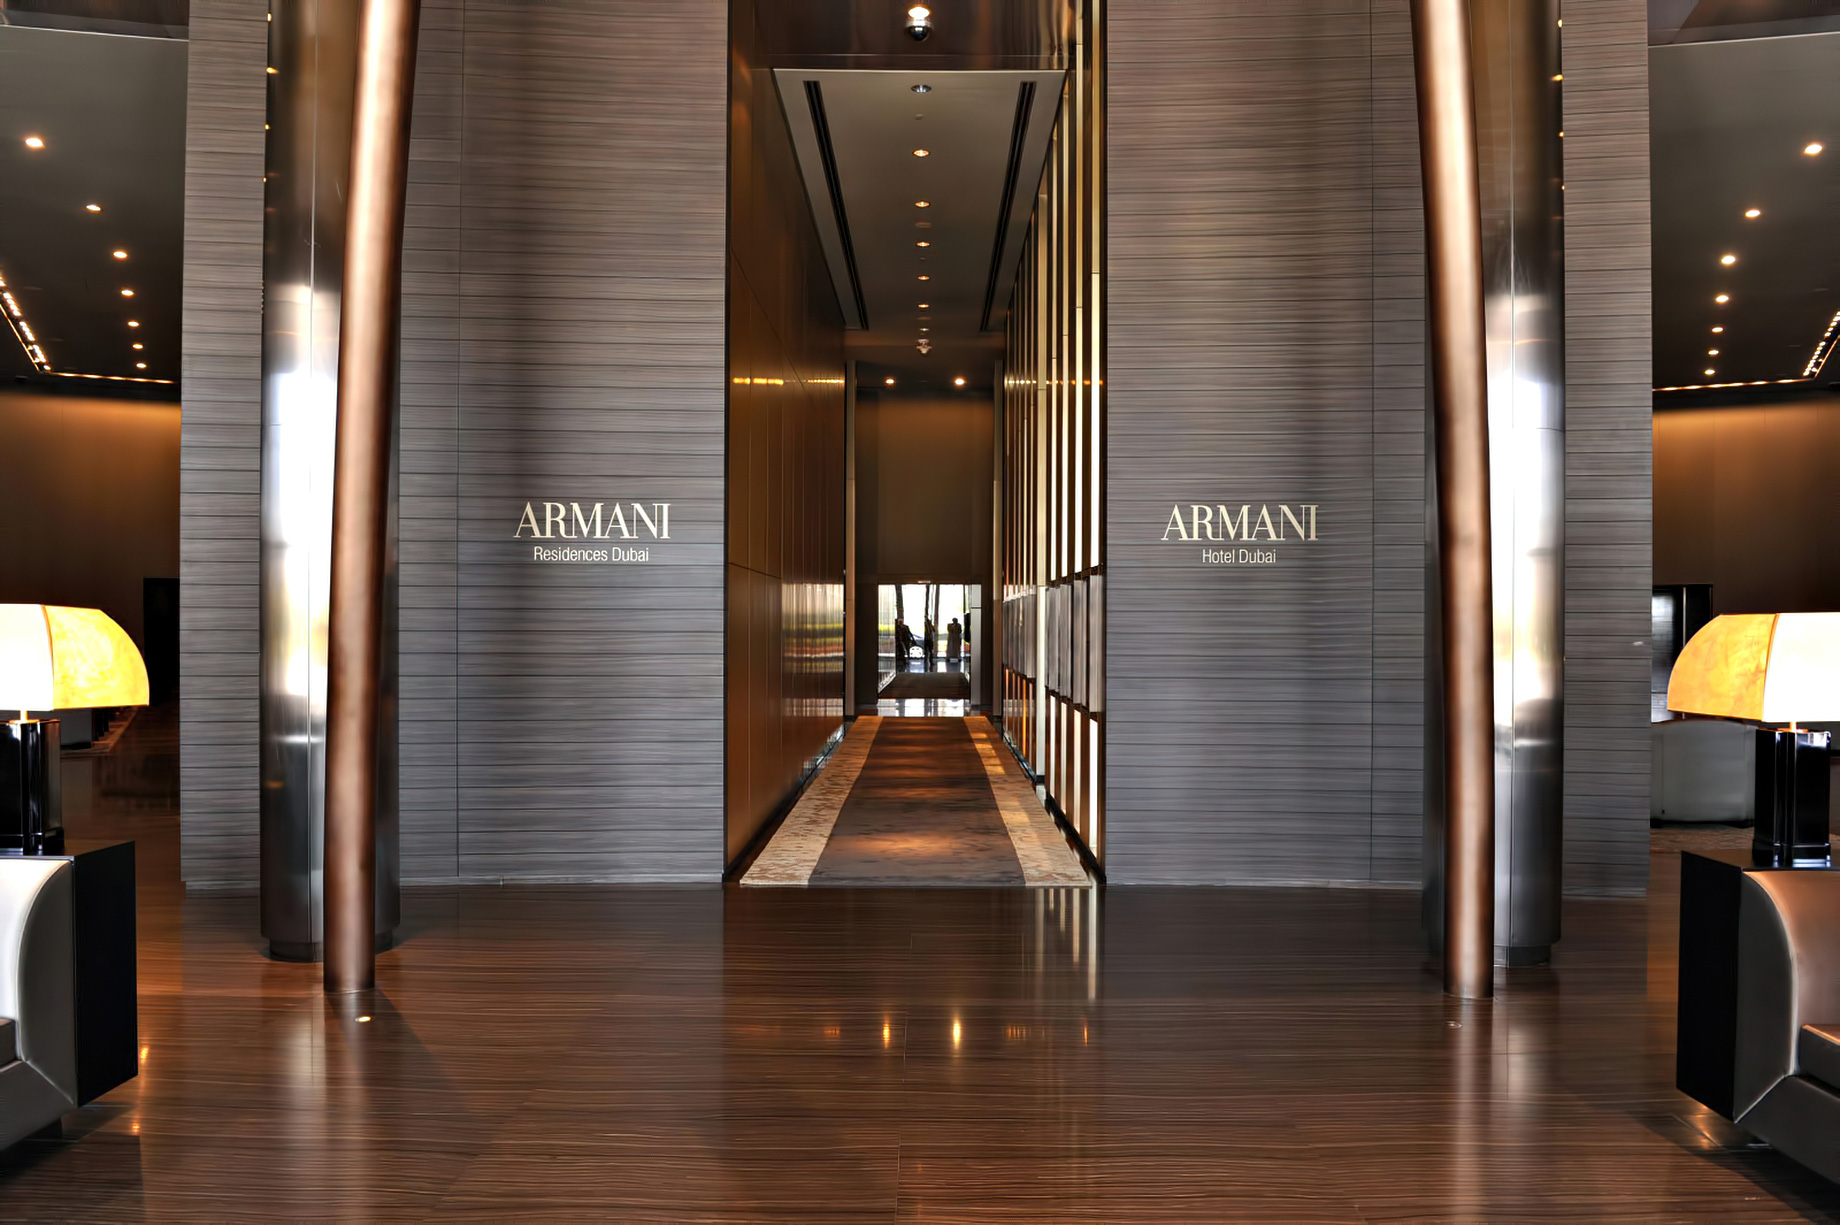 Armani Hotel Dubai – Burj Khalifa, Dubai, UAE – Armani Hotel Interior Entrance